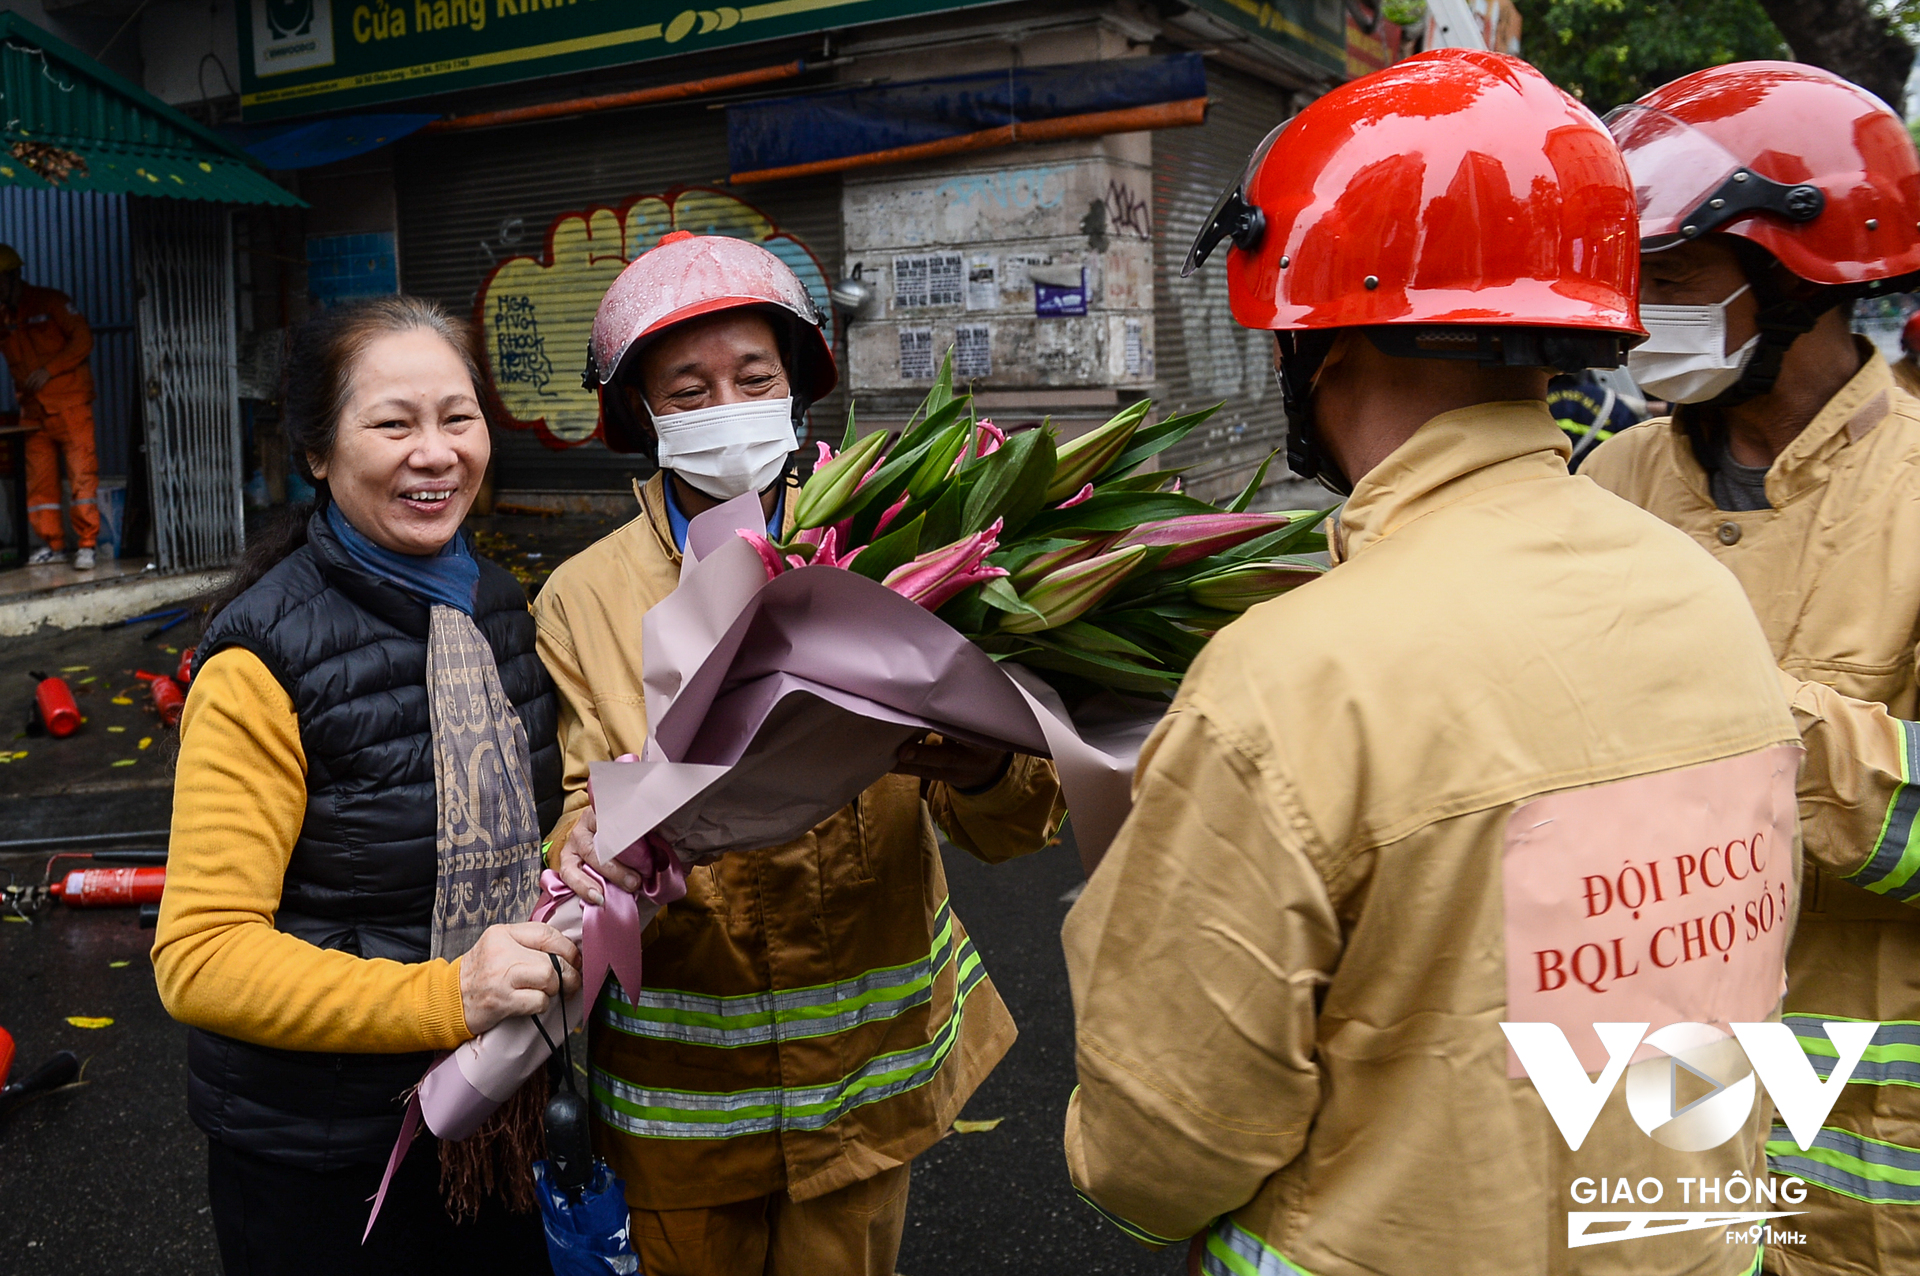 Bà con sinh sống gần chợ Châu Long tặng hoa cho đội phòng cháy chữa cháy tại cơ sở sau khi kết thúc buổi diễn tập thành công, tốt đẹp./.